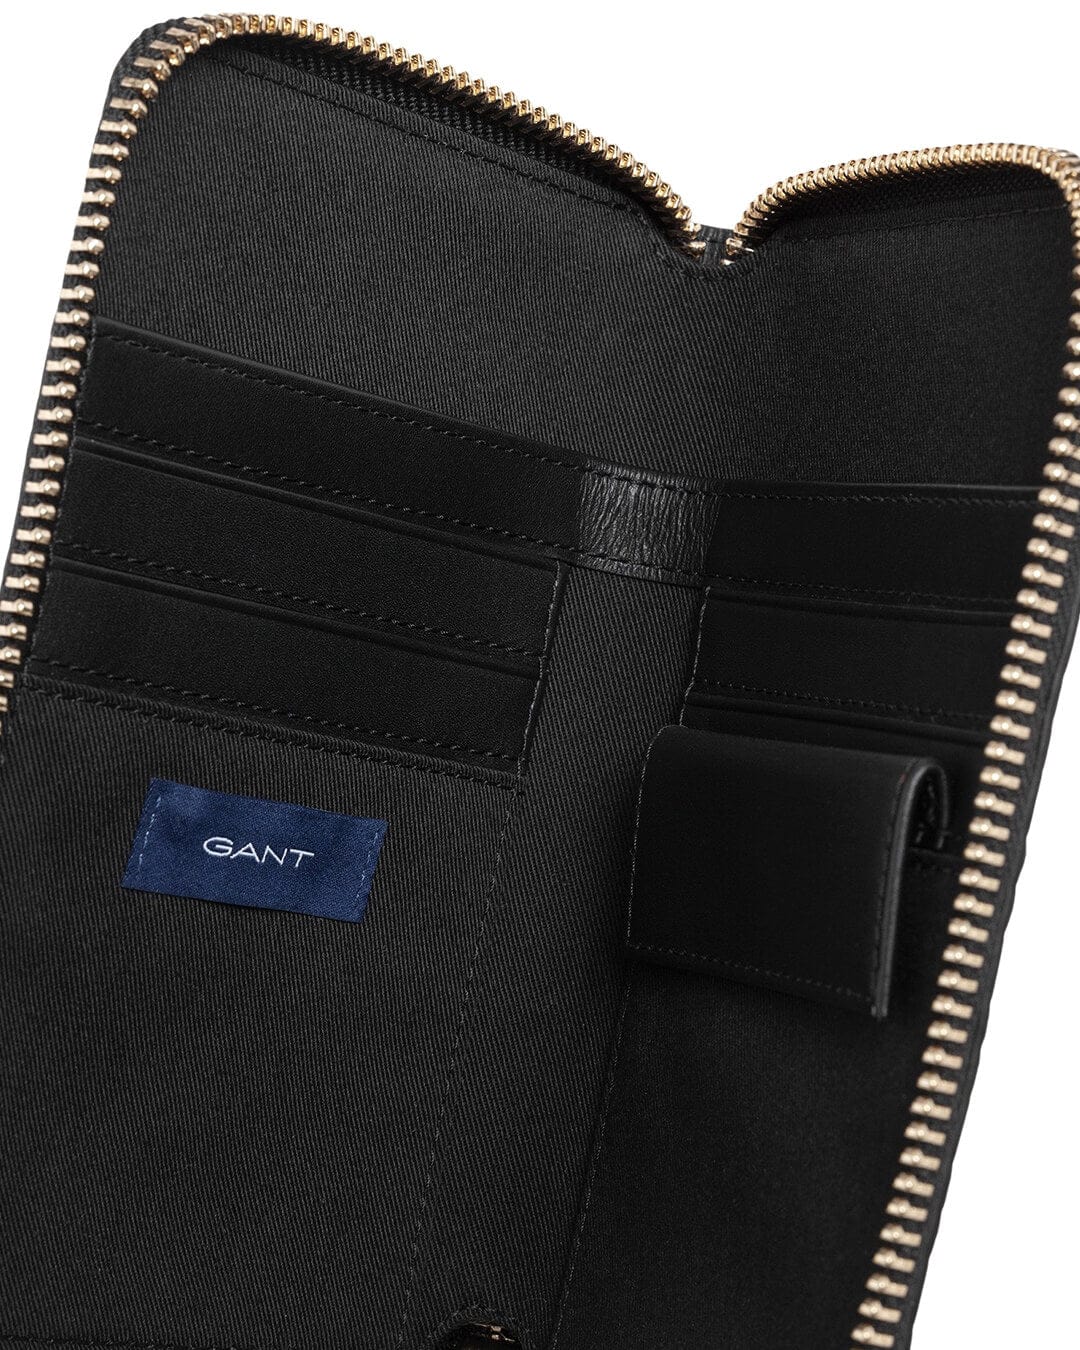 Gant Wallets One Size Gant Black Leather Wallet